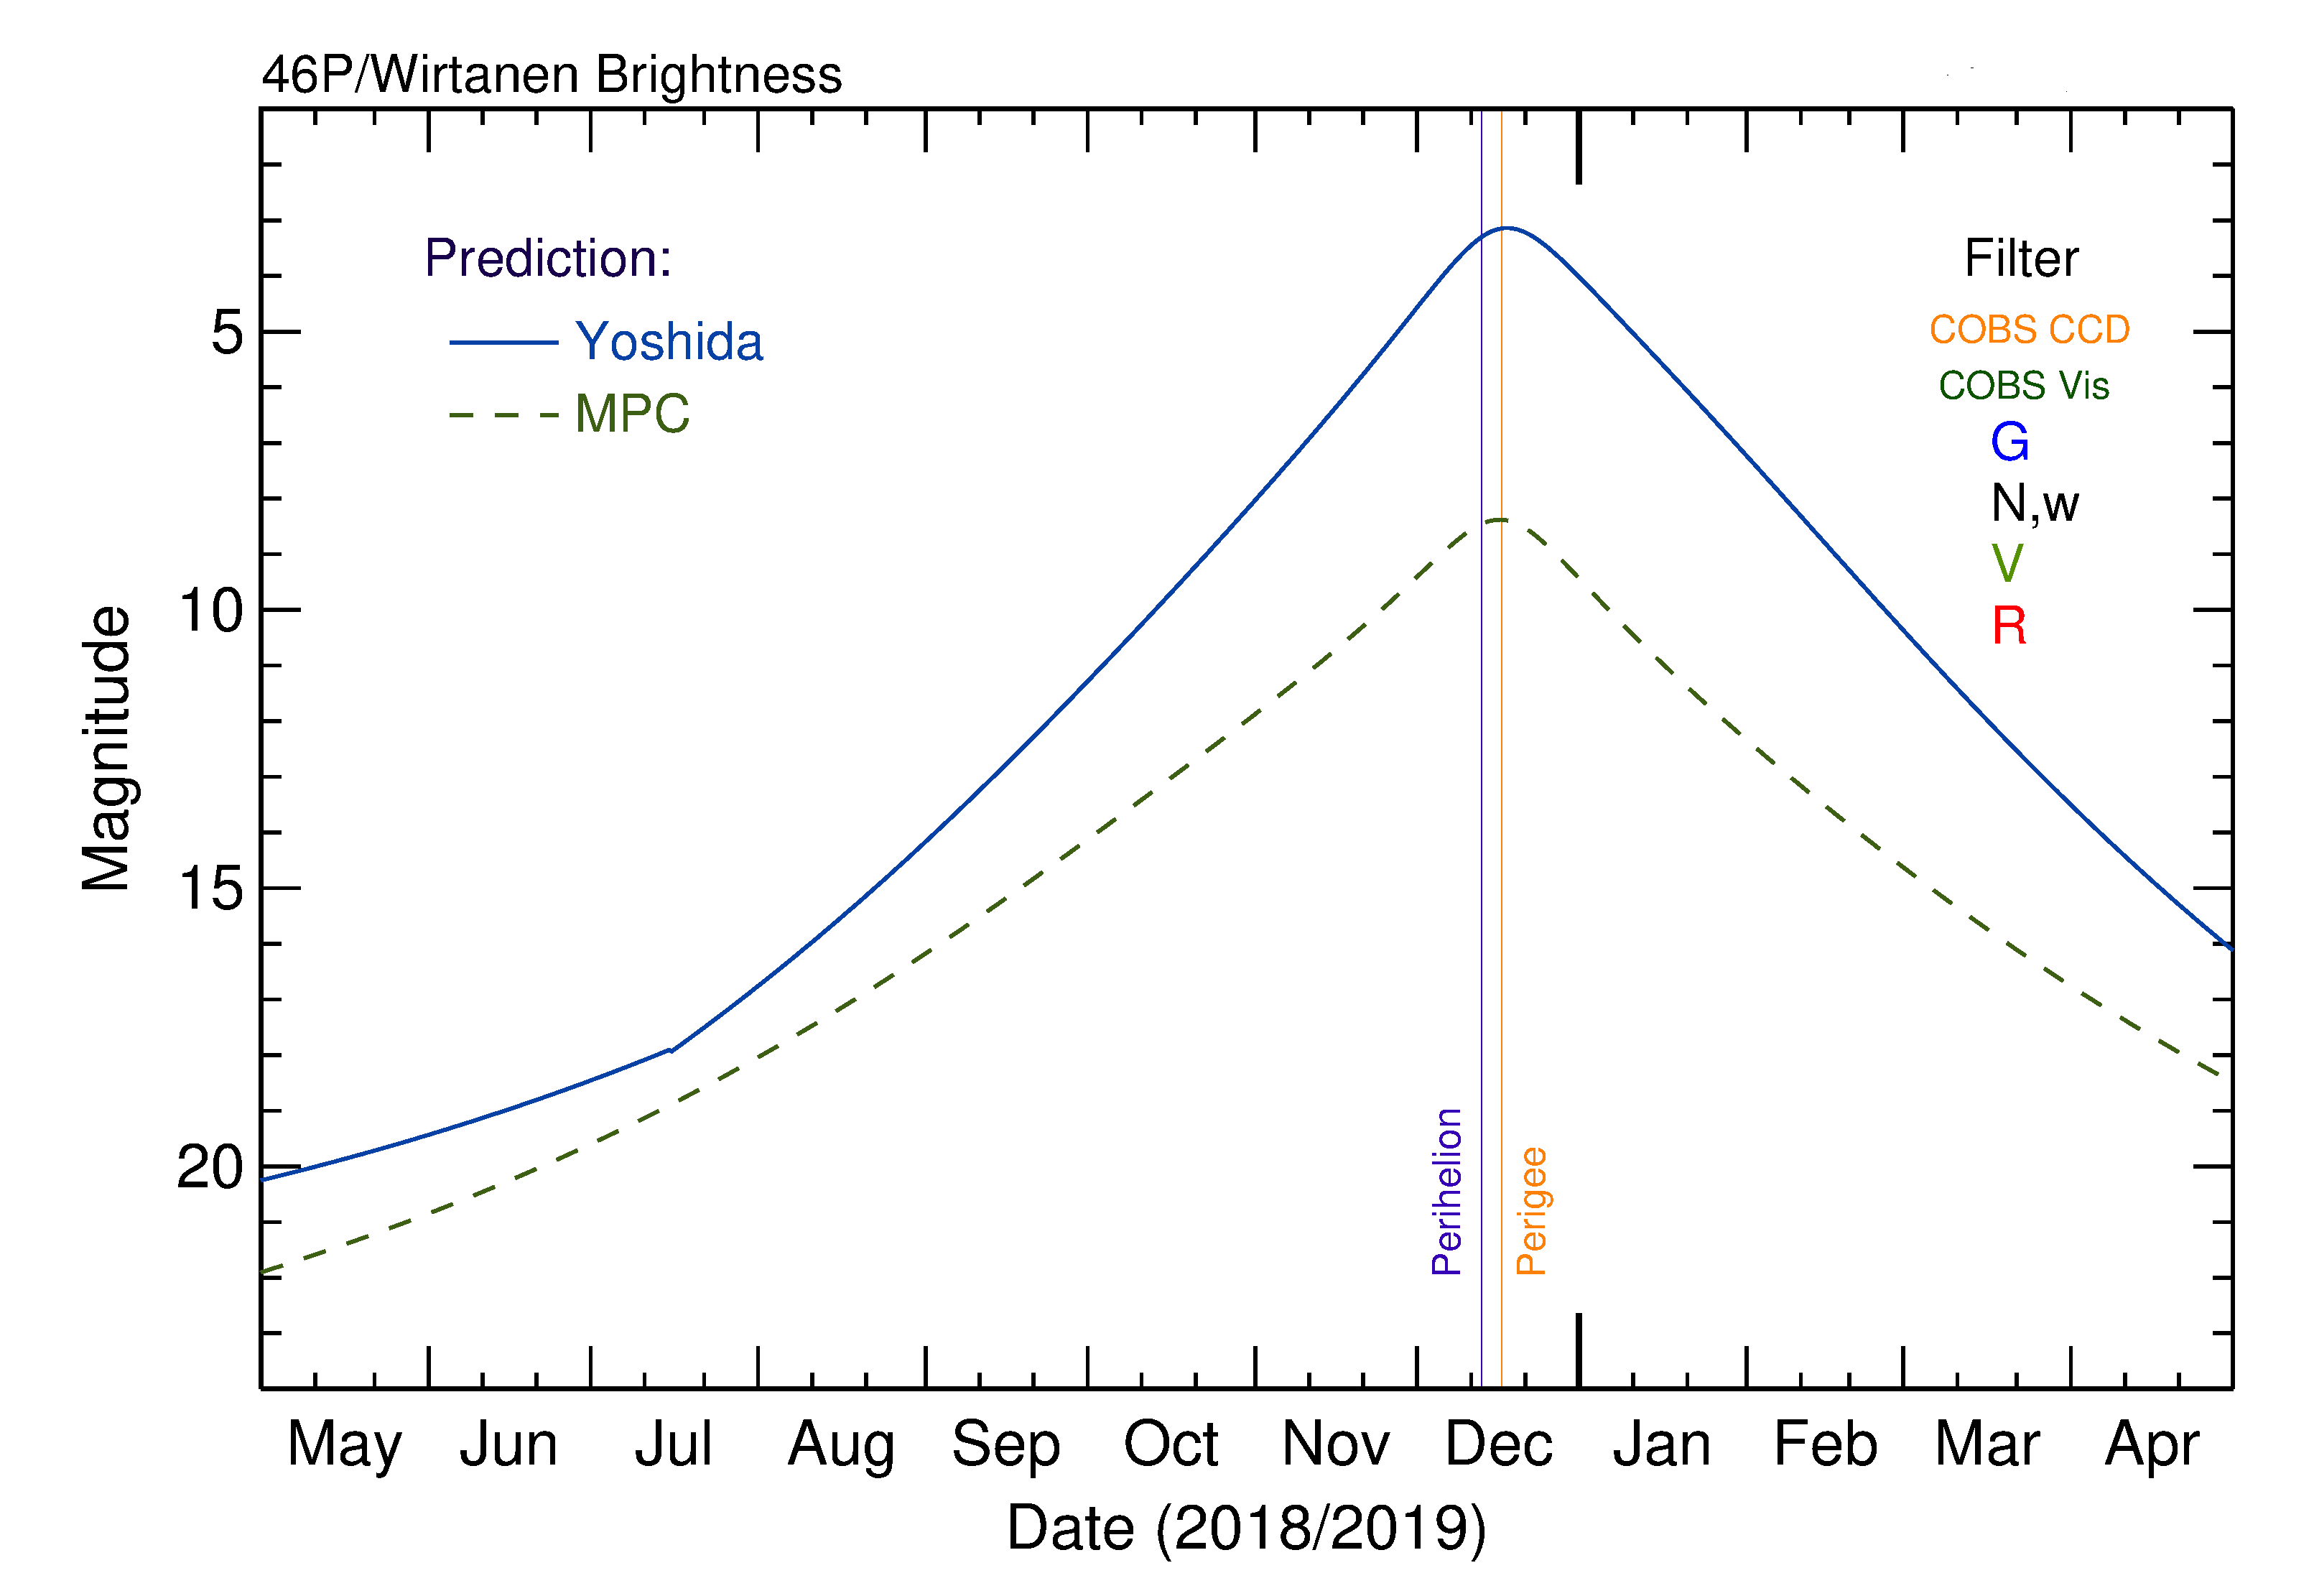 Predicted Lightcurve of comet Wirtanen